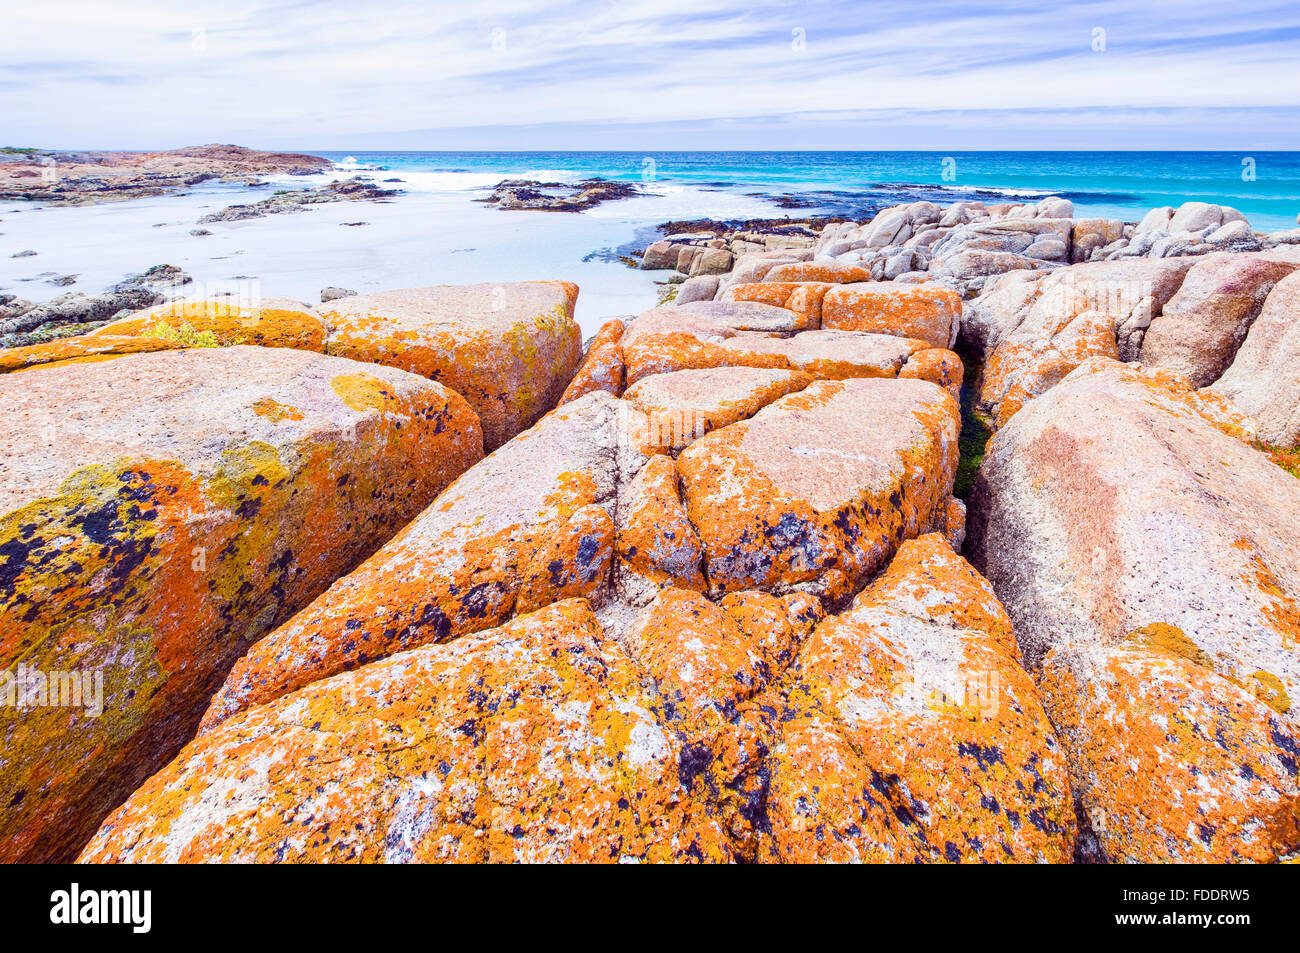 Les plages de la Péninsule de Freycinet en Tasmanie, montrant des roches couvertes de lichen orange Banque D'Images